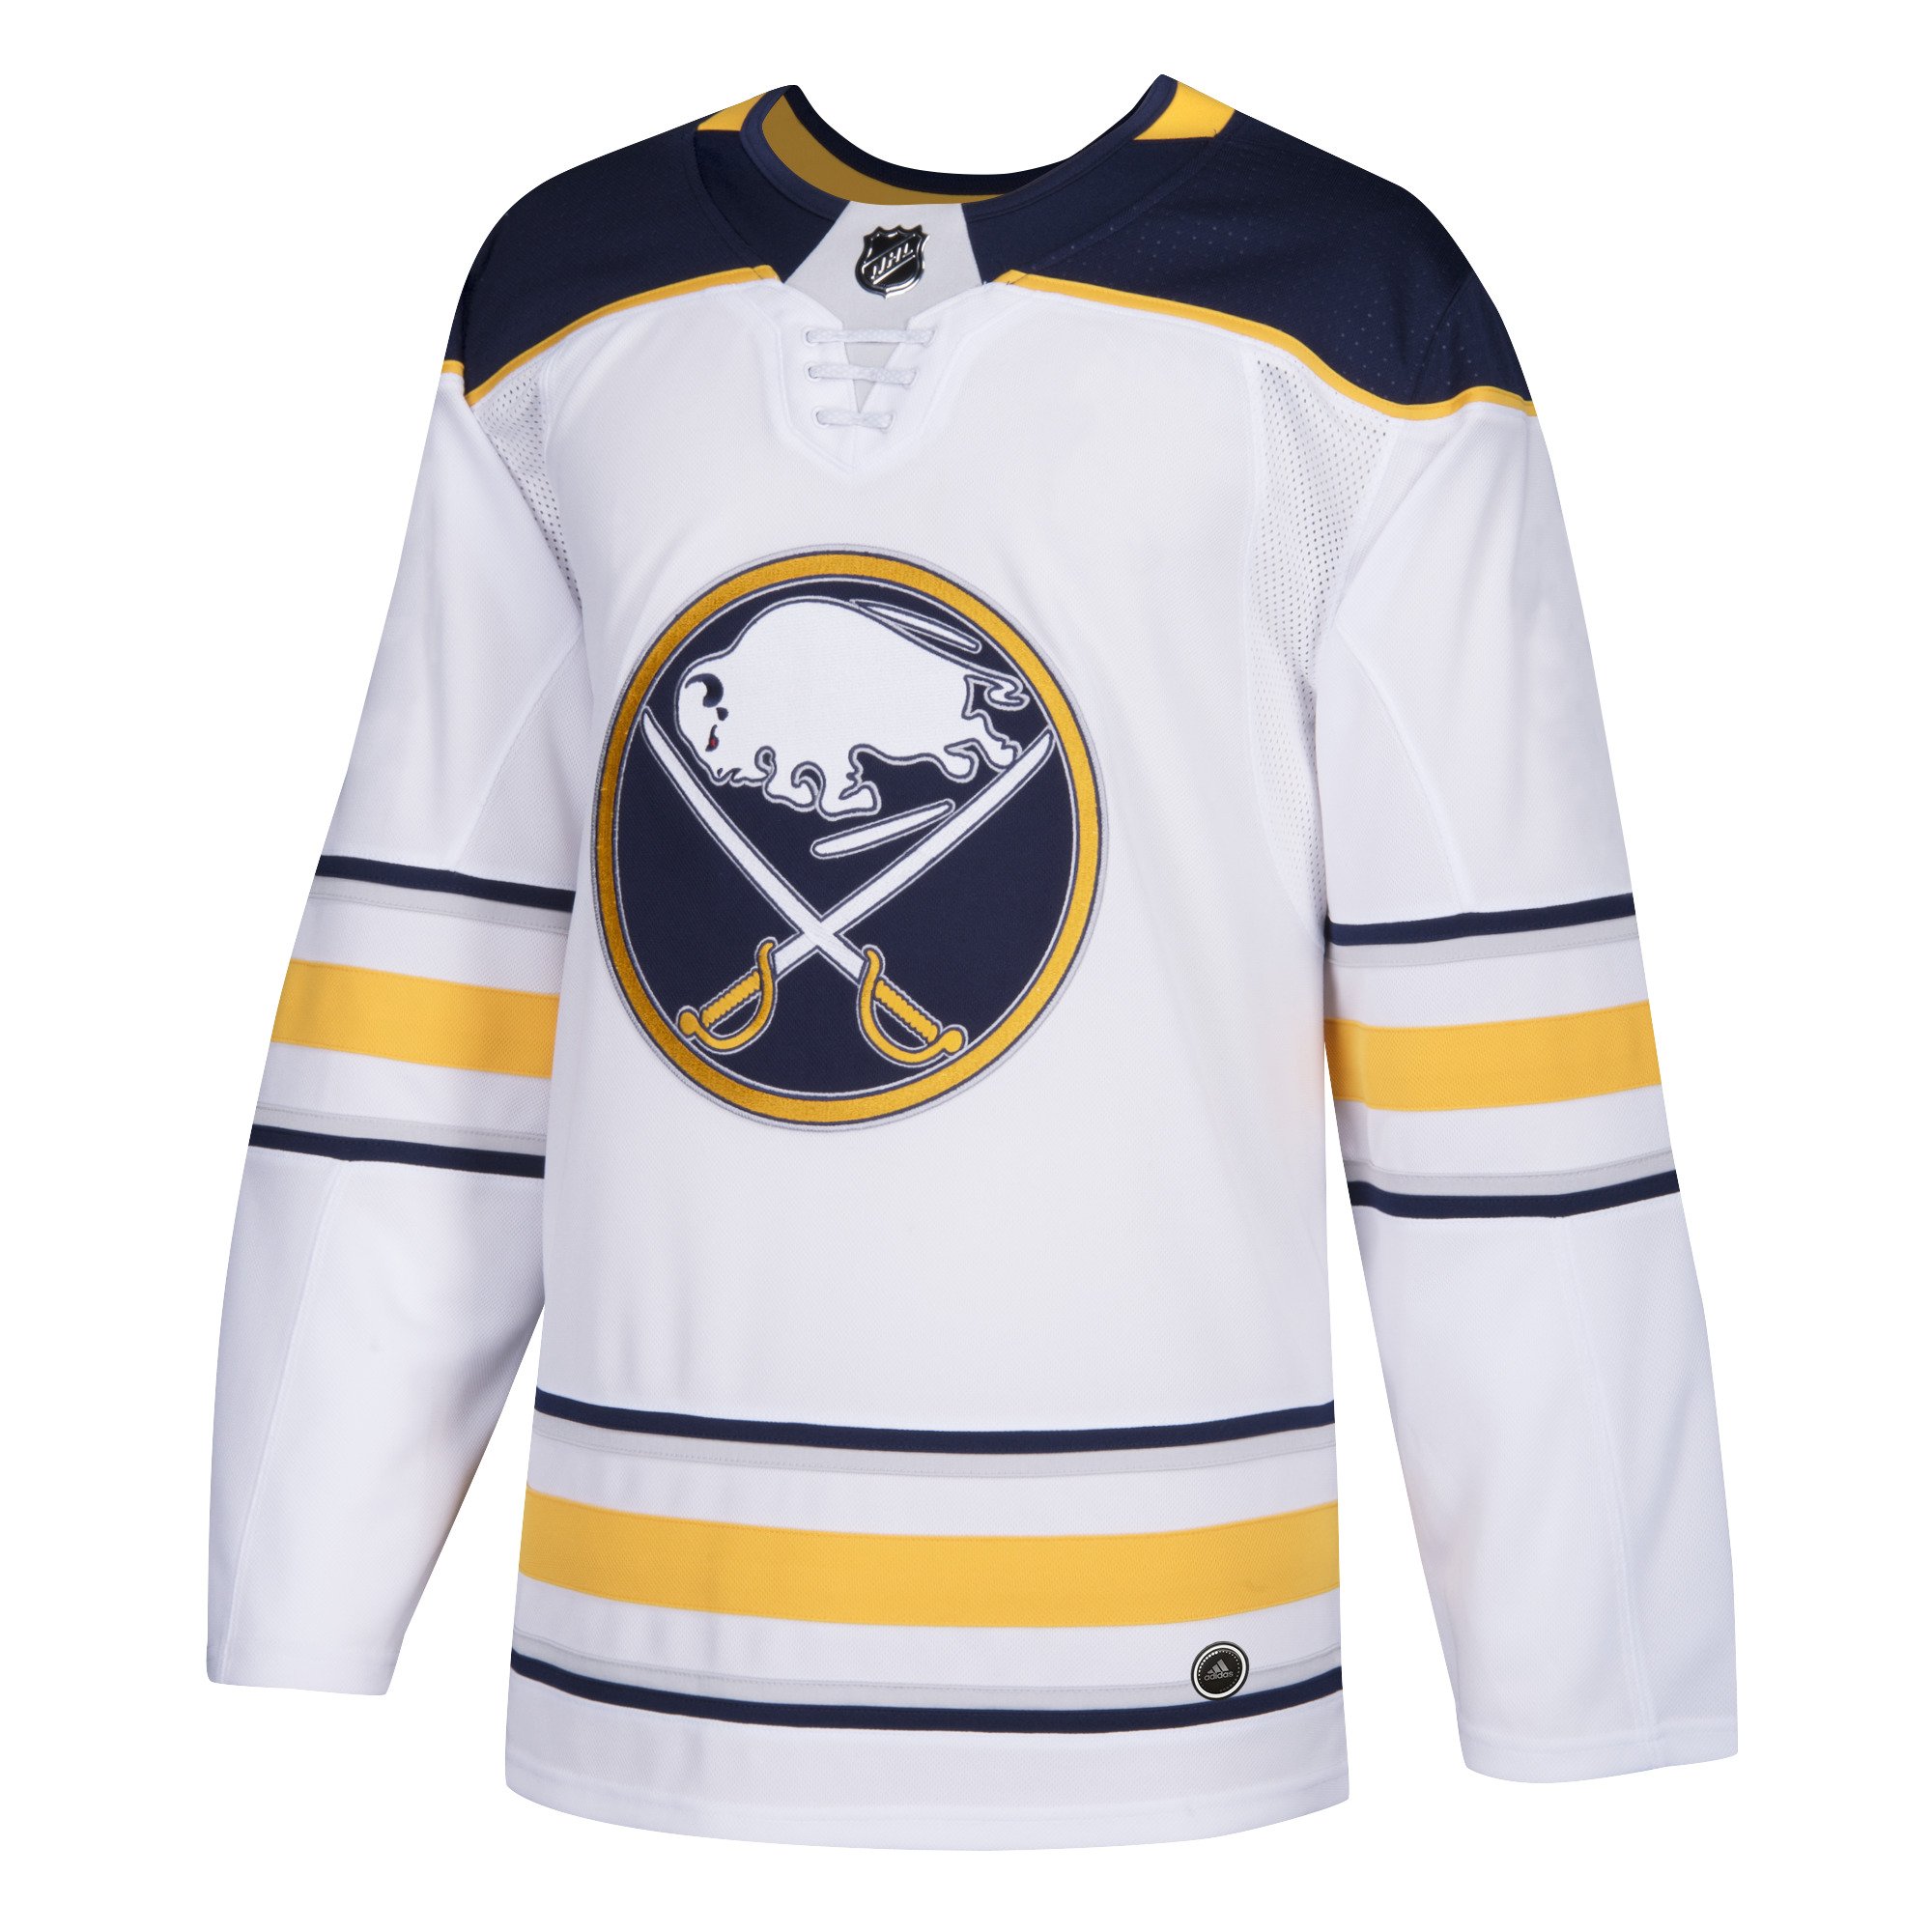 Sabres reveal alternate jersey